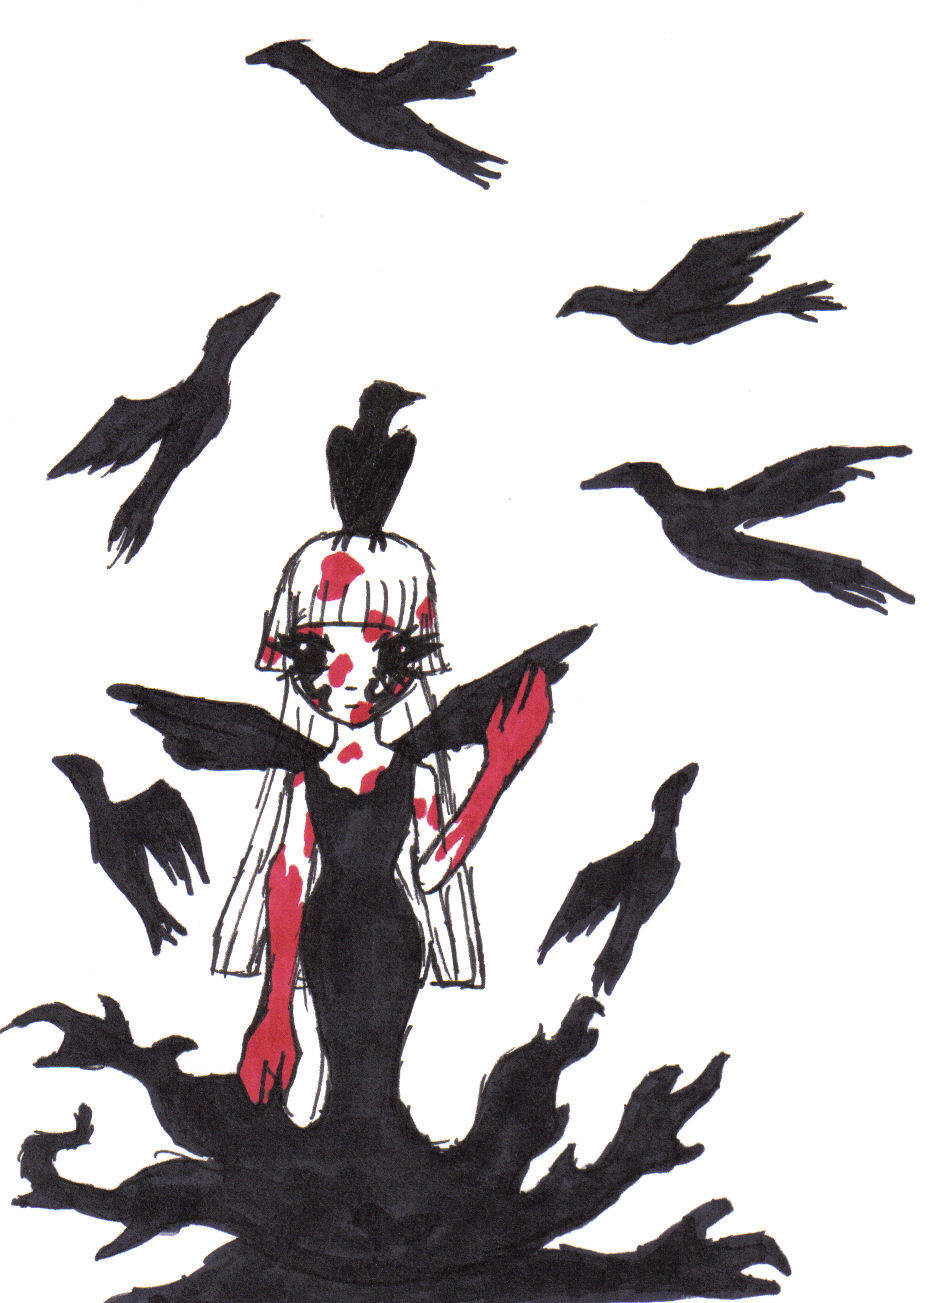 Ravens by Penguins_luv_LSD